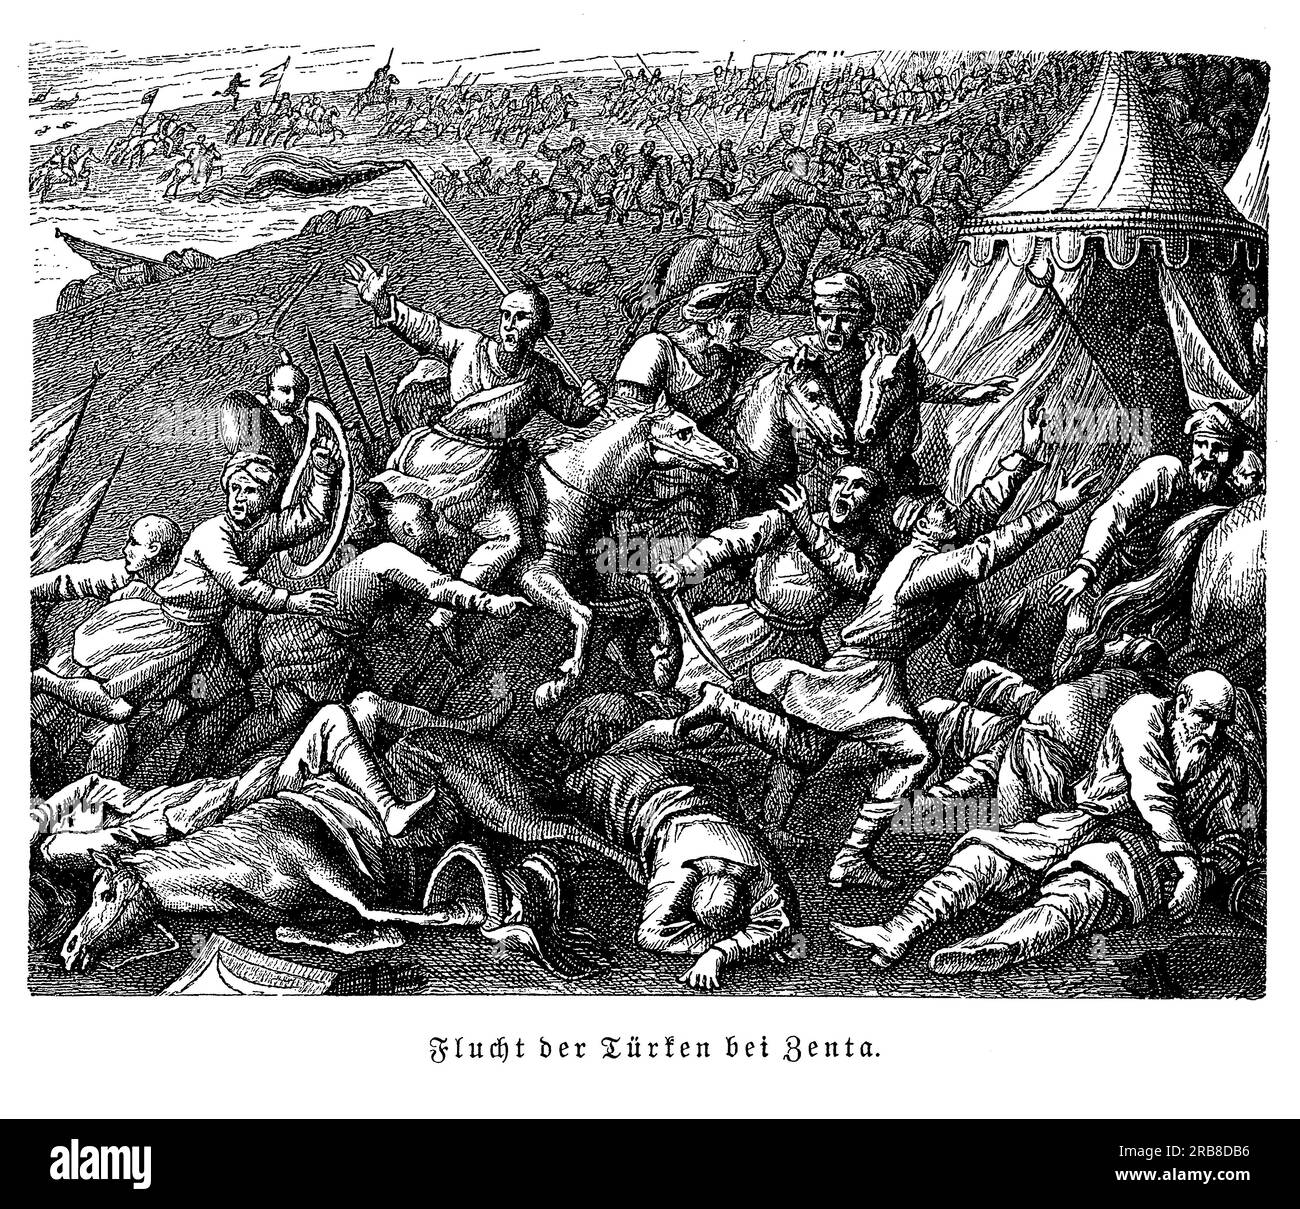 La bataille de Zenta, également connue sous le nom de bataille de Senta, fut une victoire décisive de l'Empire autrichien contre l'Empire ottoman en 1697. La bataille a eu lieu près de la ville de Zenta, dans l'actuelle Serbie, et a marqué la fin de la Grande Guerre turque. L'armée autrichienne, sous le commandement du prince Eugène de Savoie, a vaincu une force ottomane beaucoup plus importante et a forcé l'Empire ottoman à signer le traité de Karlowitz en 1699, qui a mis fin à l'expansion de l'Empire ottoman en Europe. La bataille de Zenta est considérée comme l'une des plus grandes victoires du prince Eugène Banque D'Images